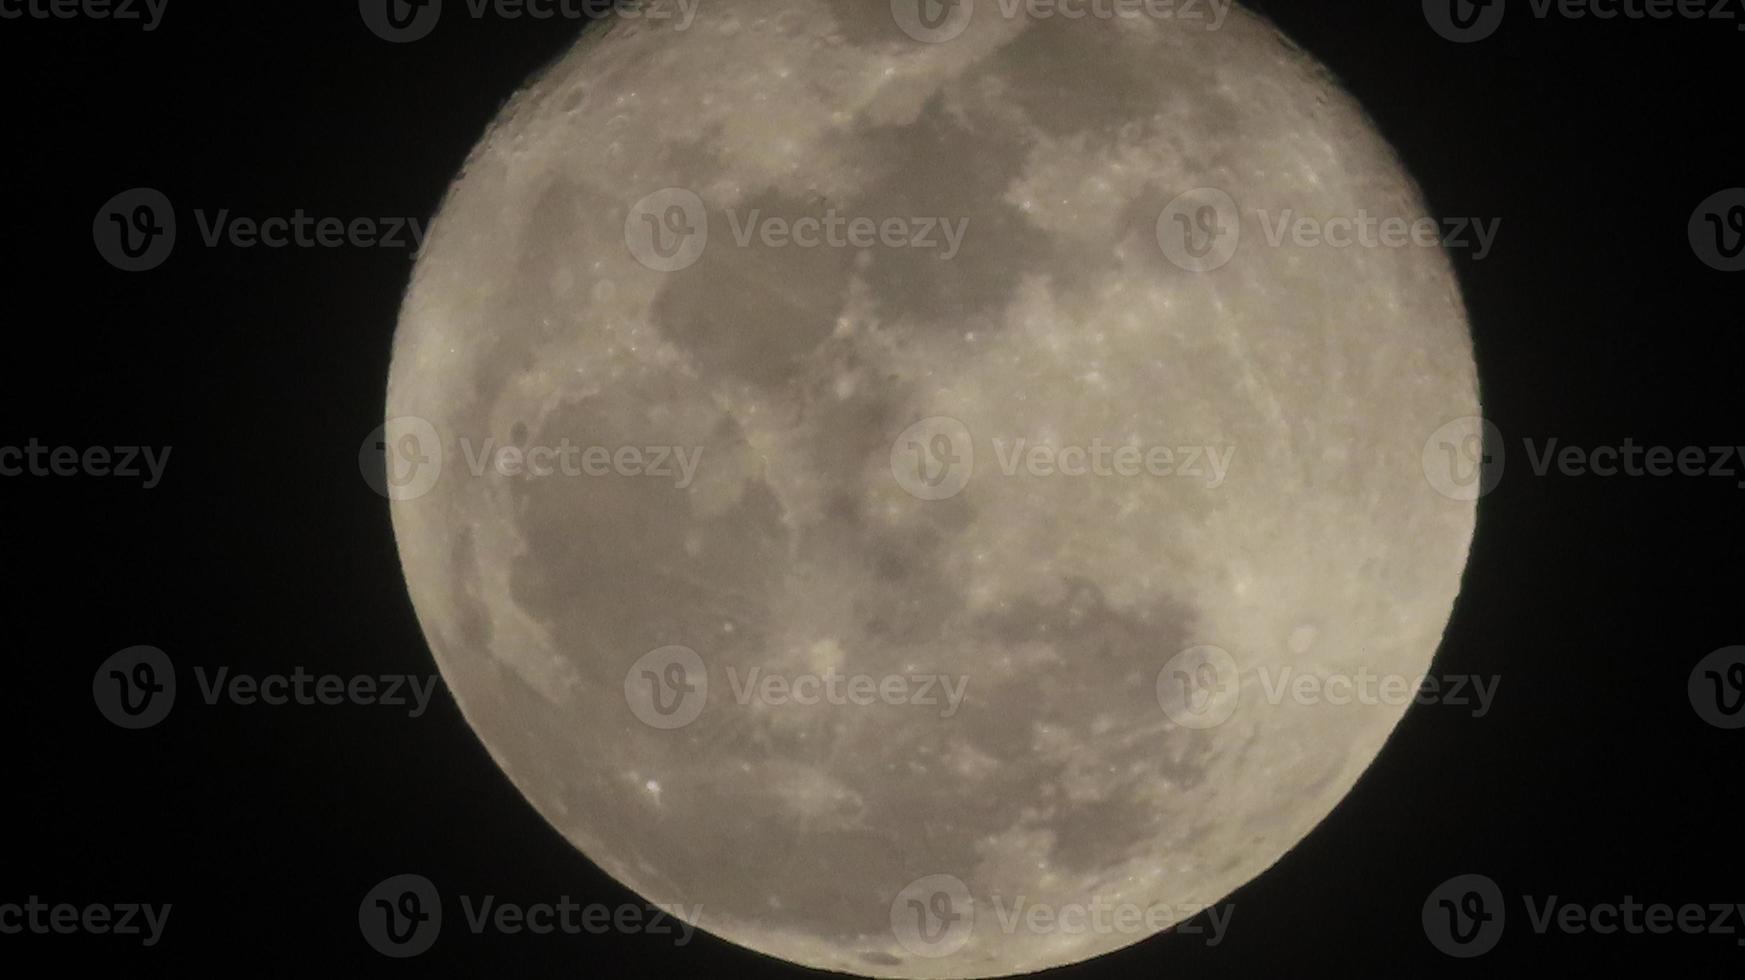 fase da lua lua cheia foto